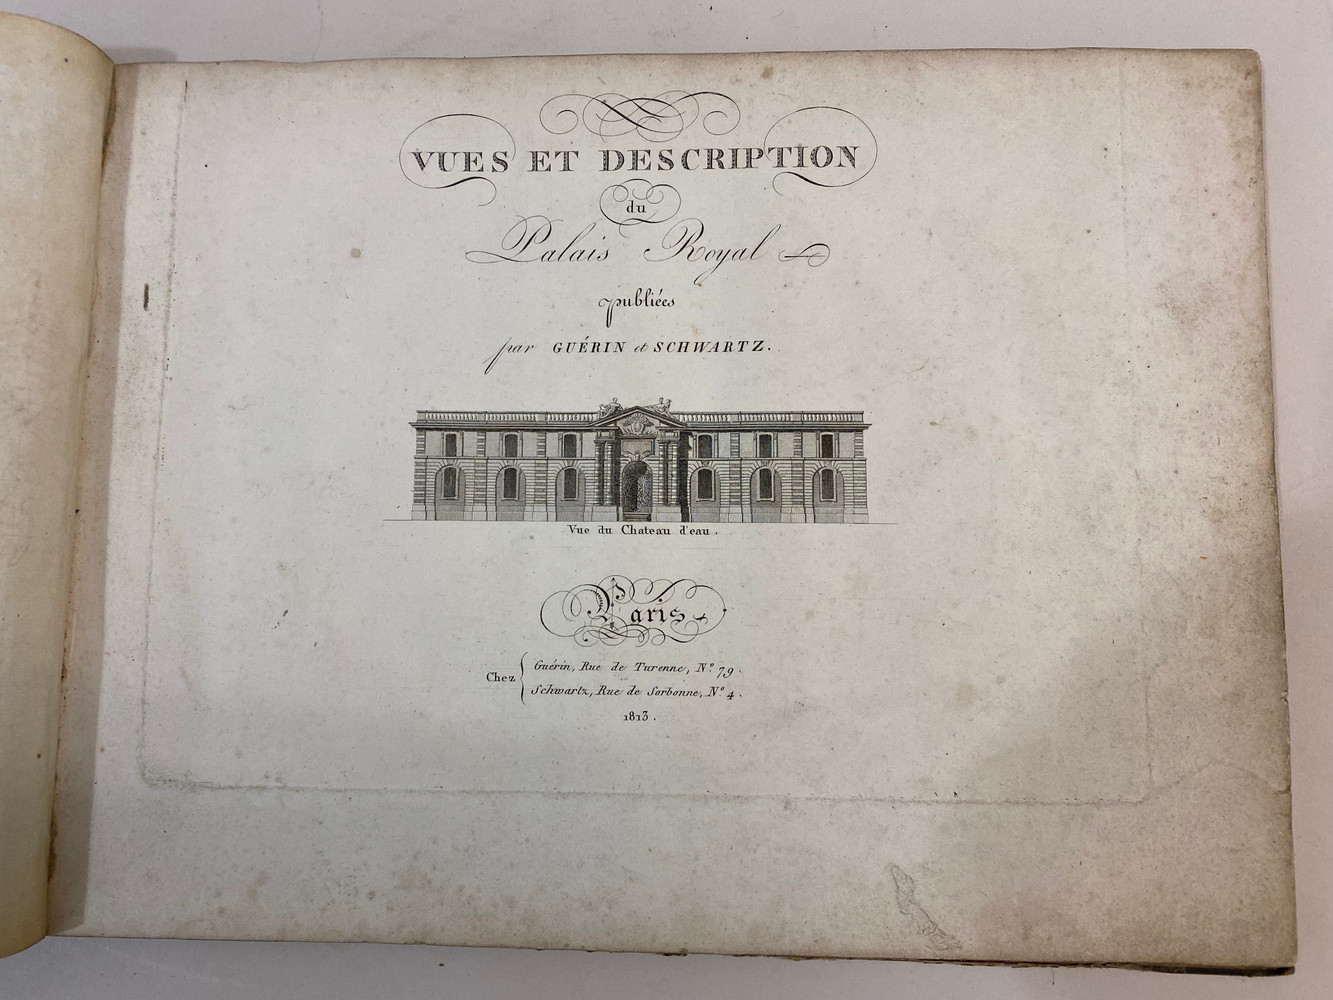 ANON. Vues et description du Palais Royal, 1813. - Image 9 of 13